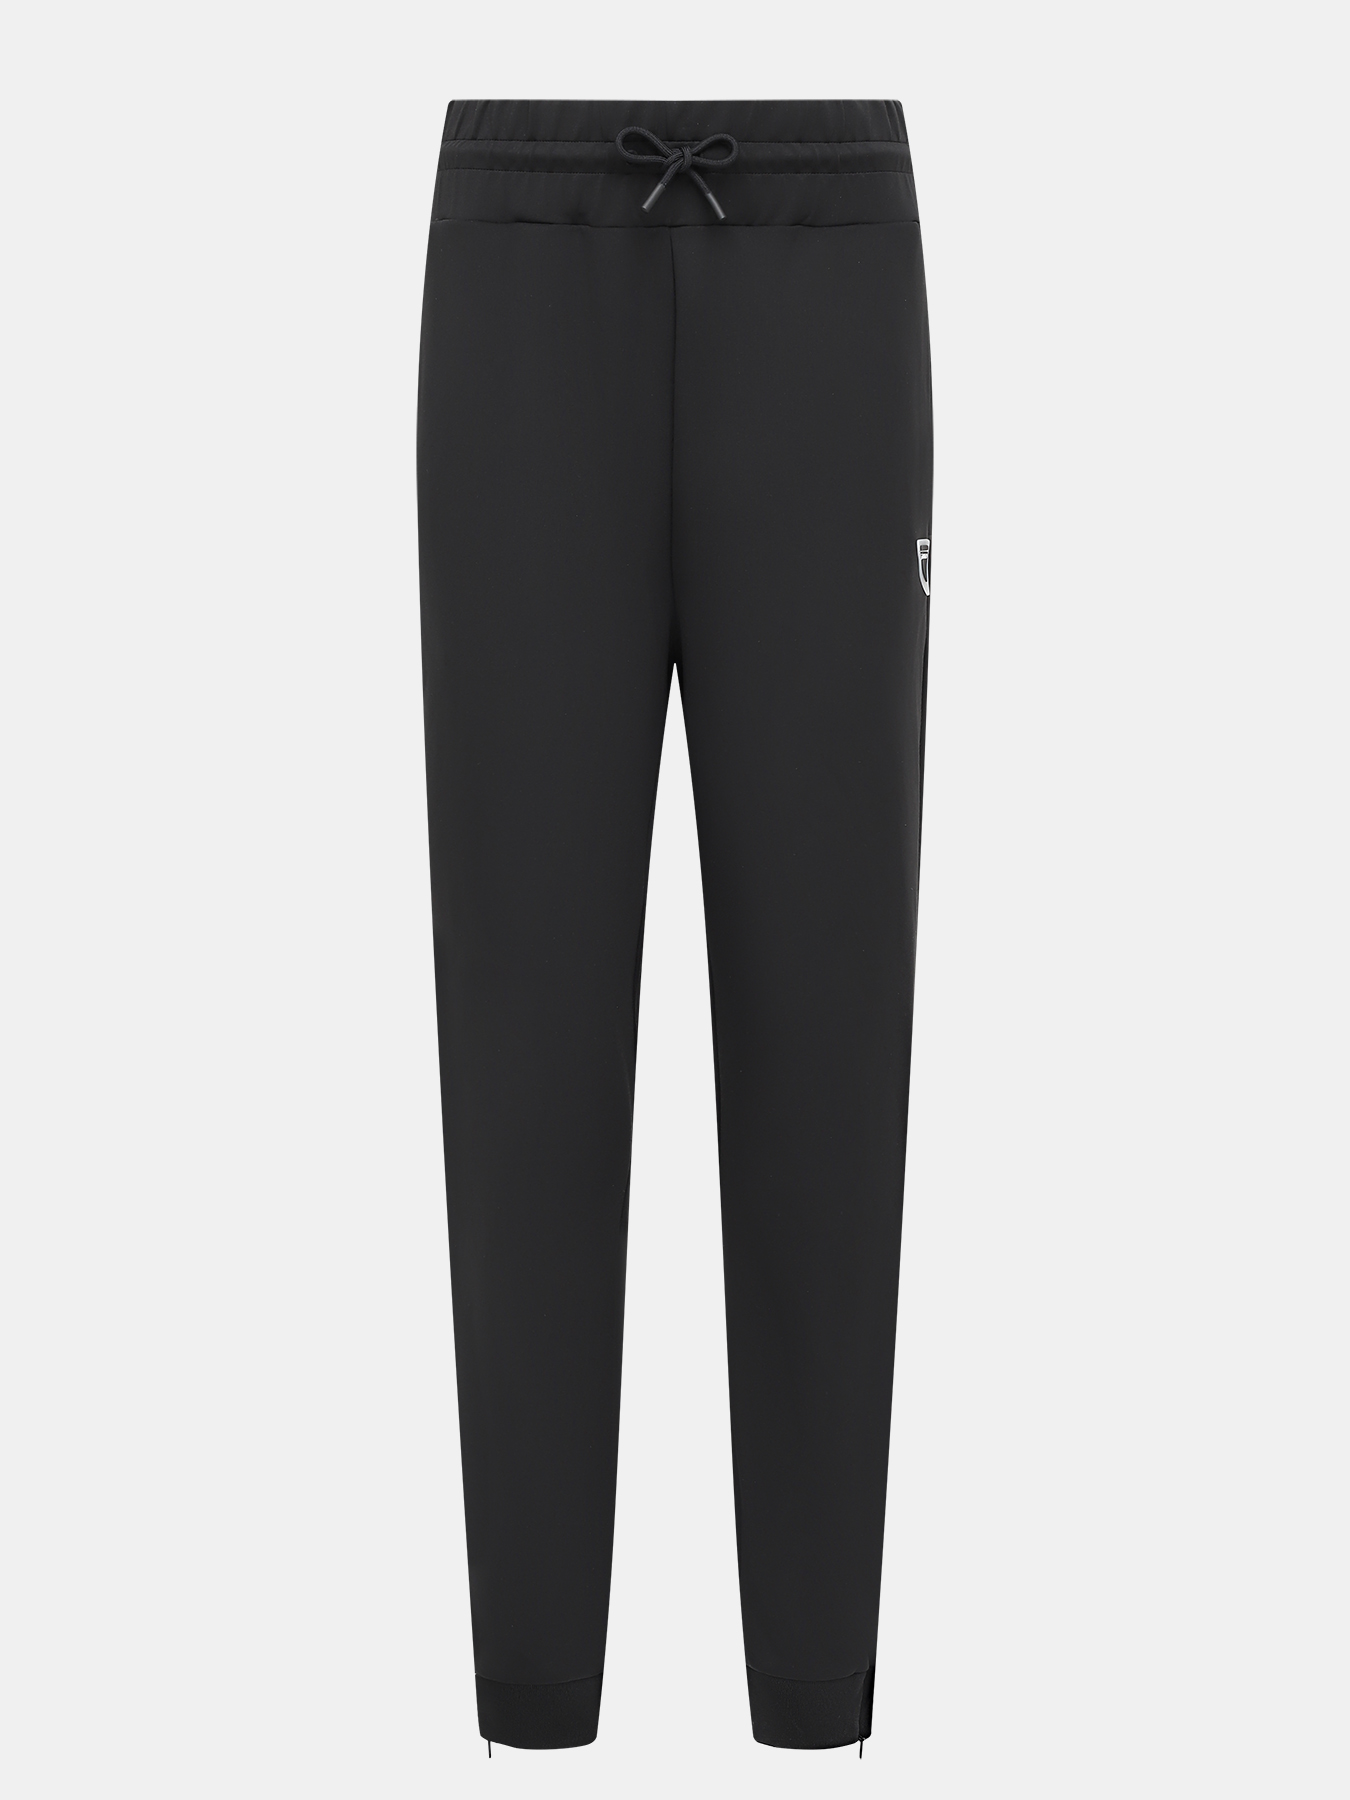 Спортивные брюки Narcy HUGO 420599-043, цвет черный, размер 44-46 - фото 1